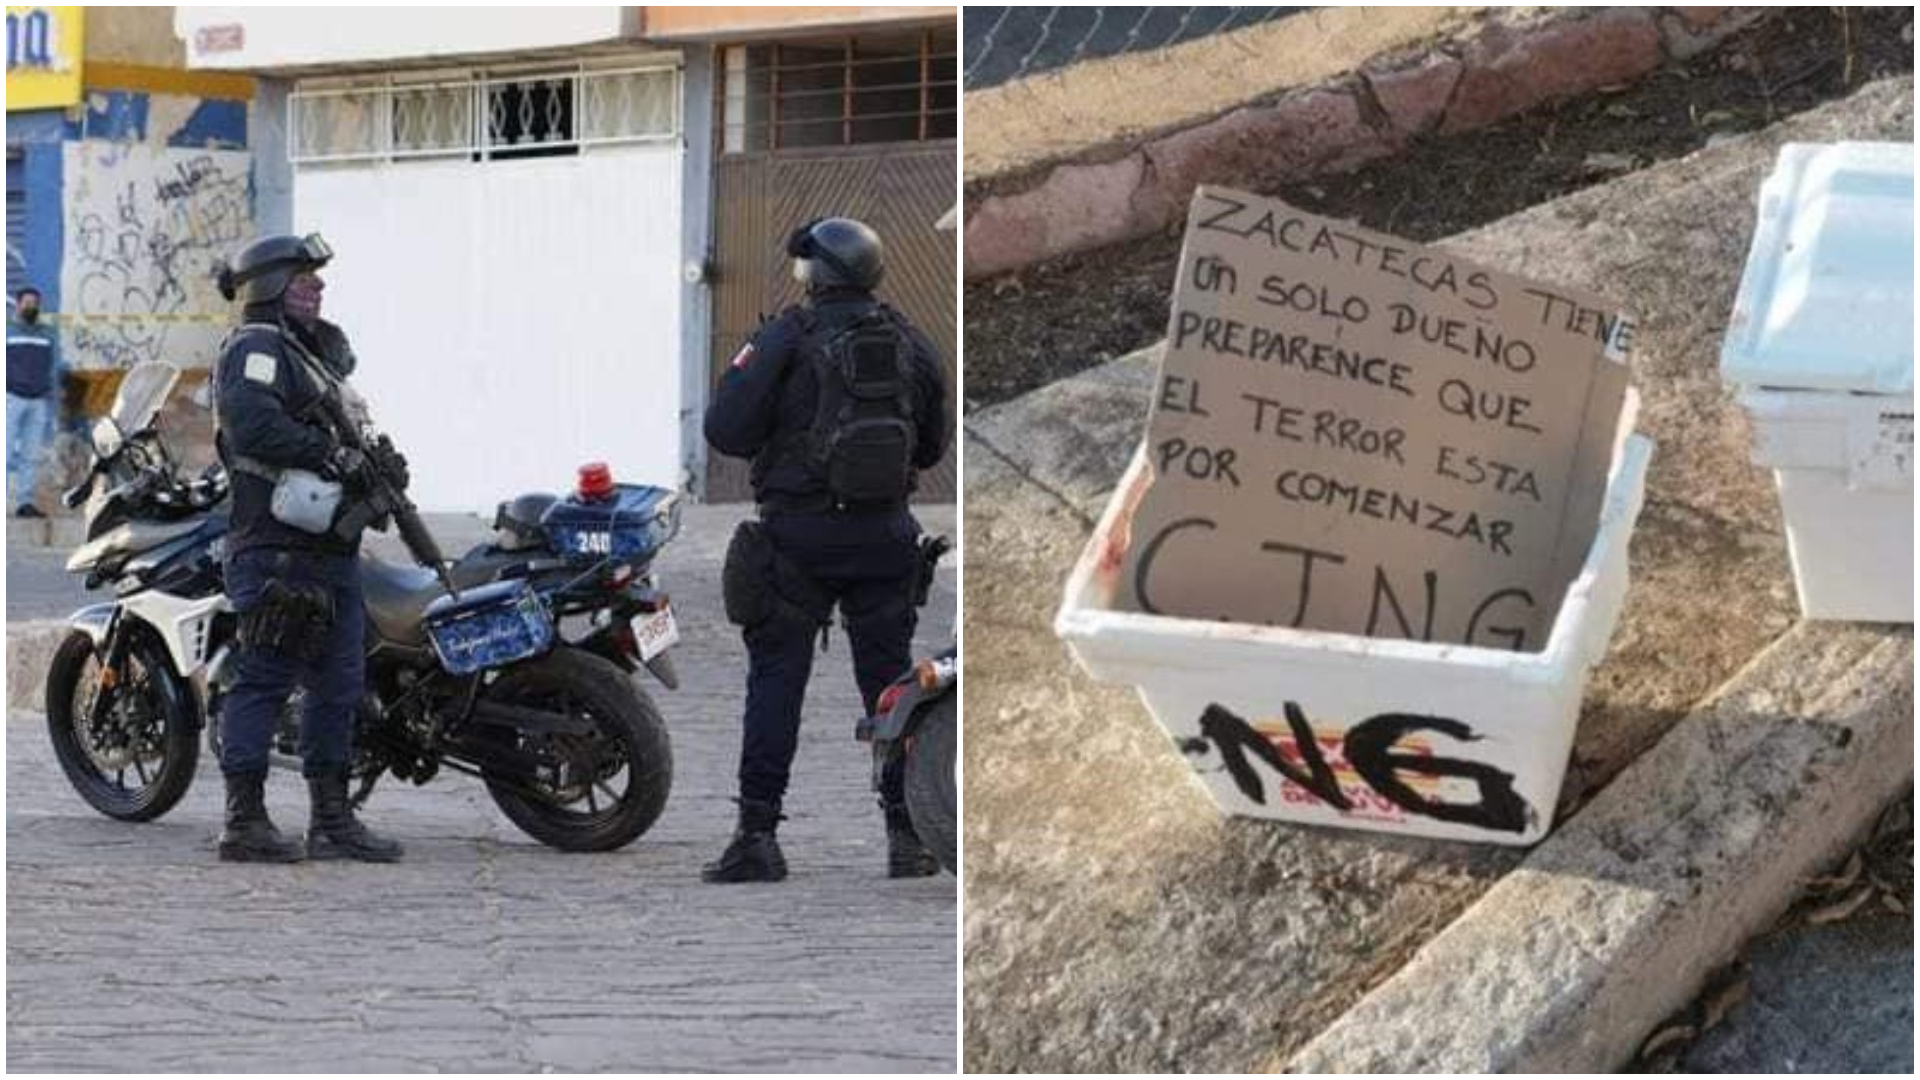 “El terror está por comenzar”, CJNG abandonó cuerpos con narcomensajes en Zacatecas